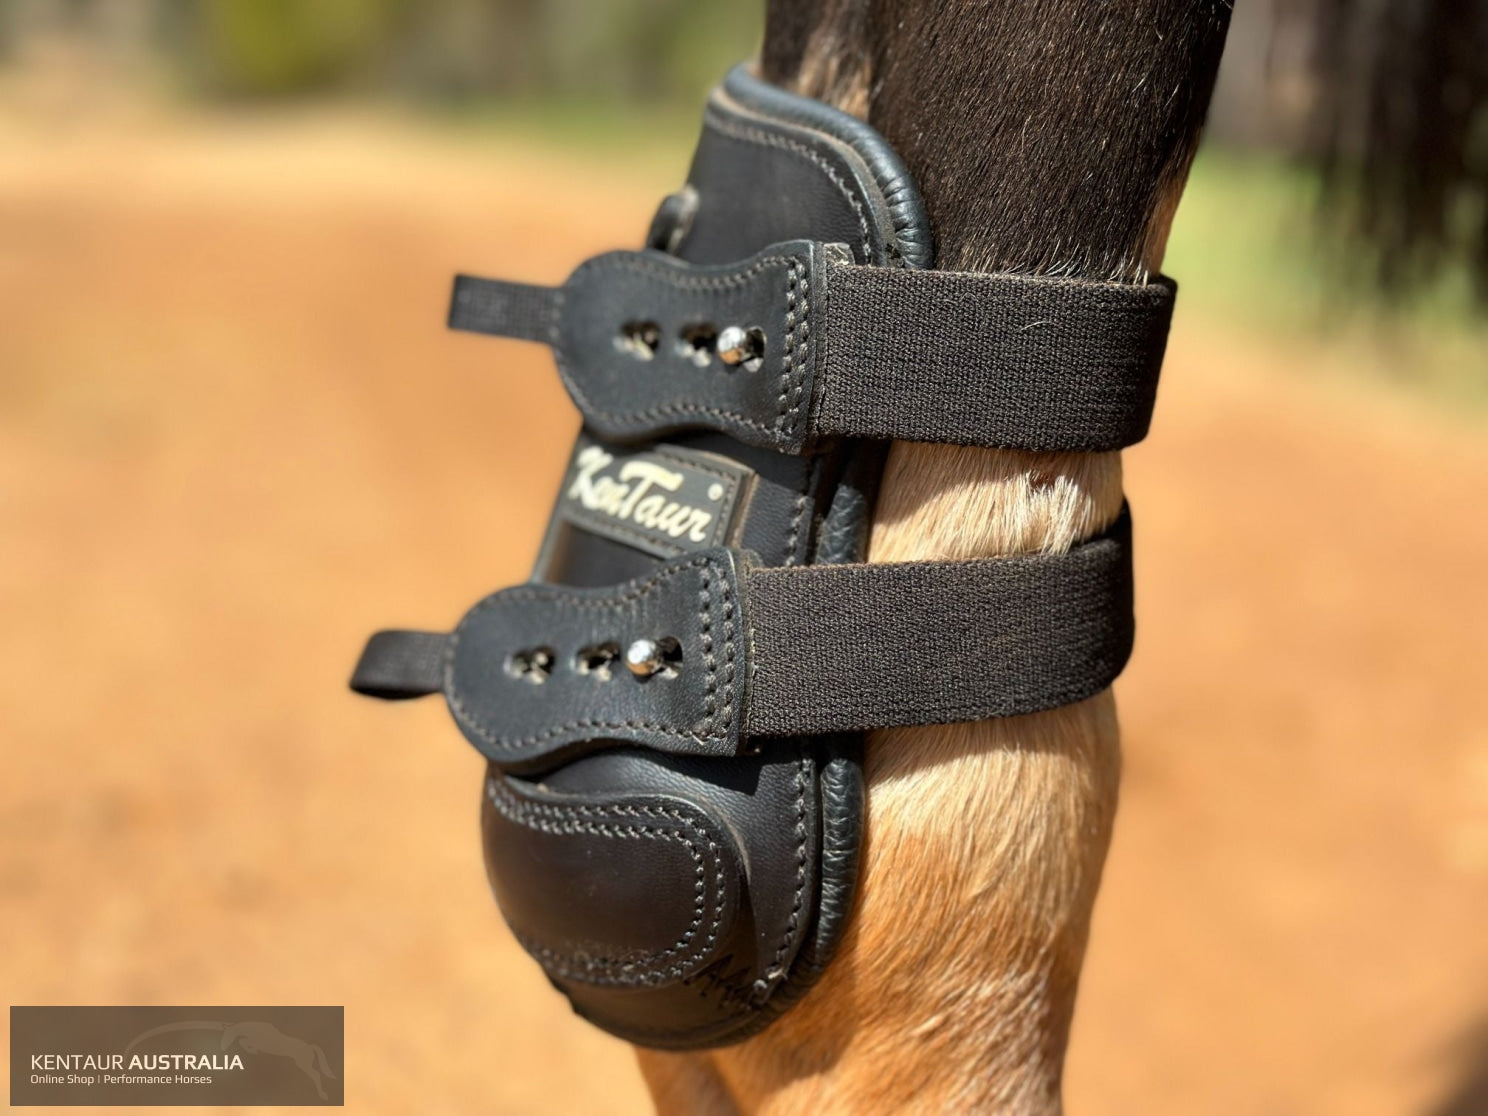 Kentaur ’Flicker 17cm’ Hind Boot Jumping Boots